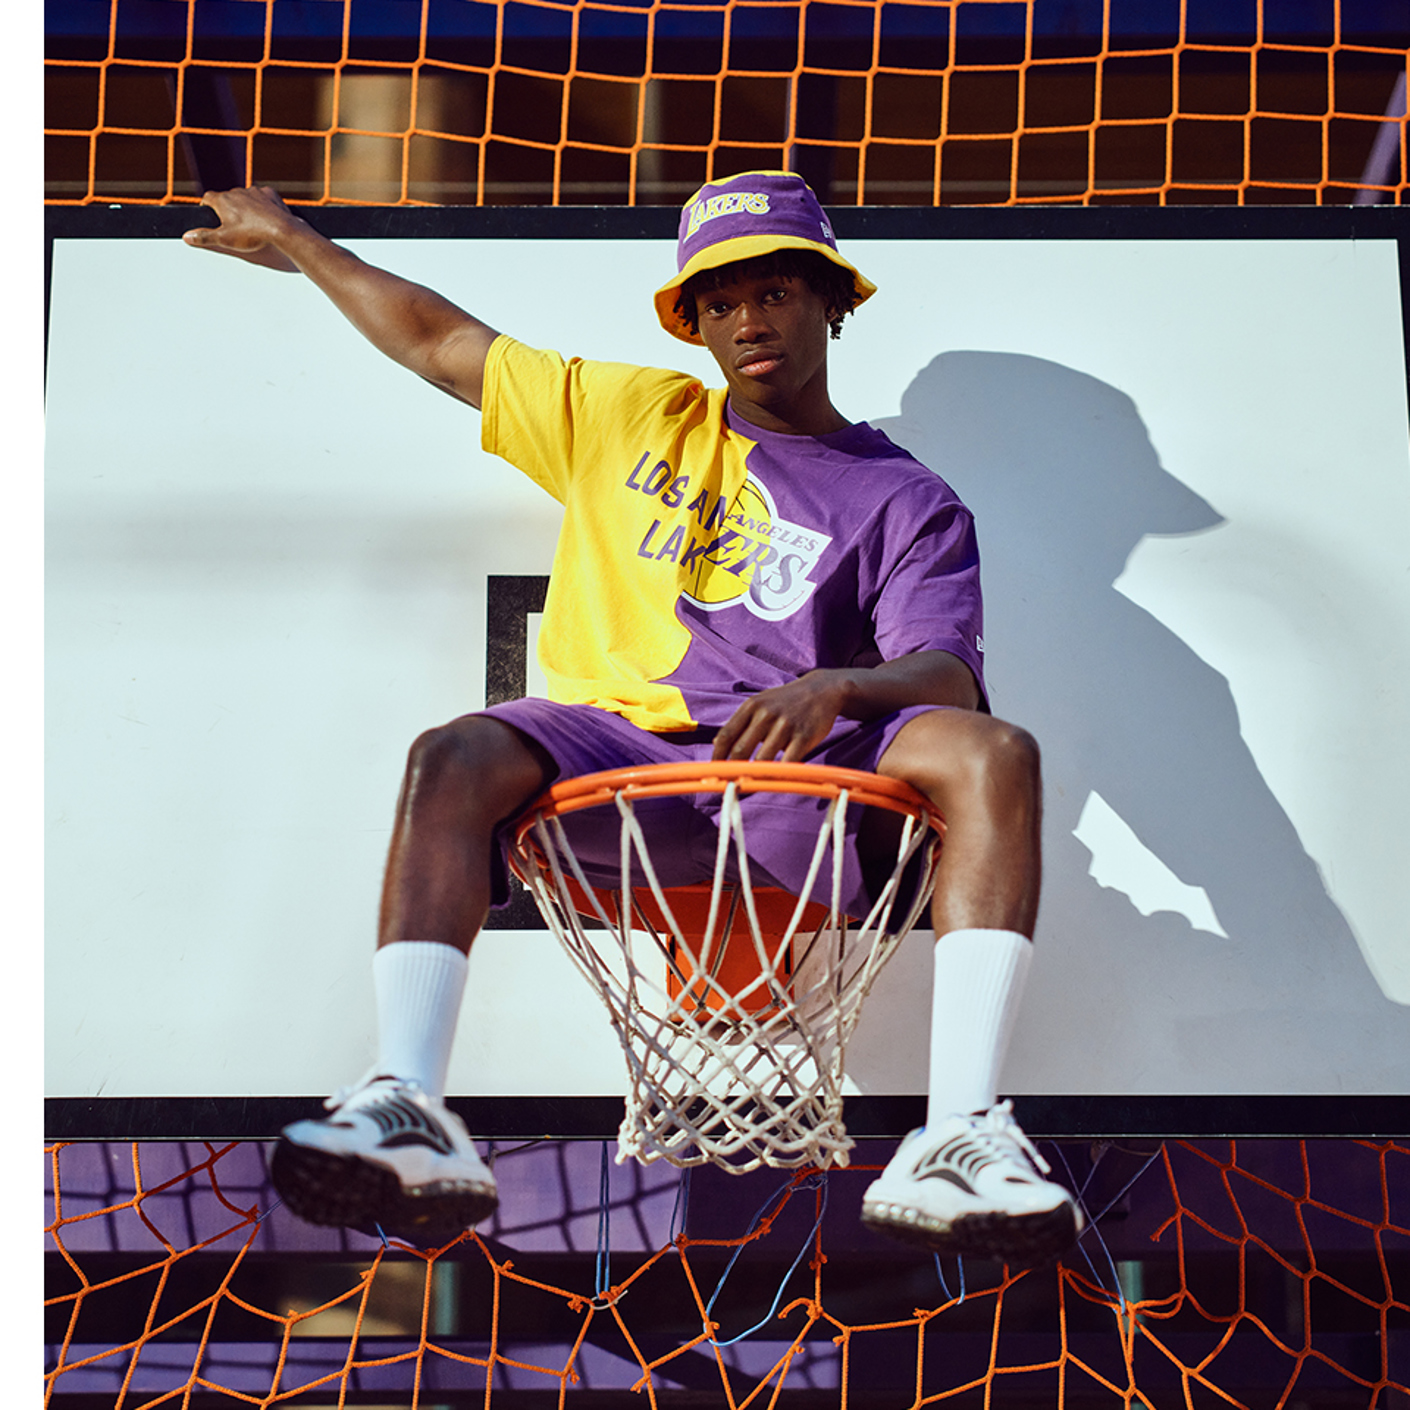 Junge im Basketballnetz mit NBA Fadeaway New Era Sommerkopfbedeckung und Bekleidungskollektion